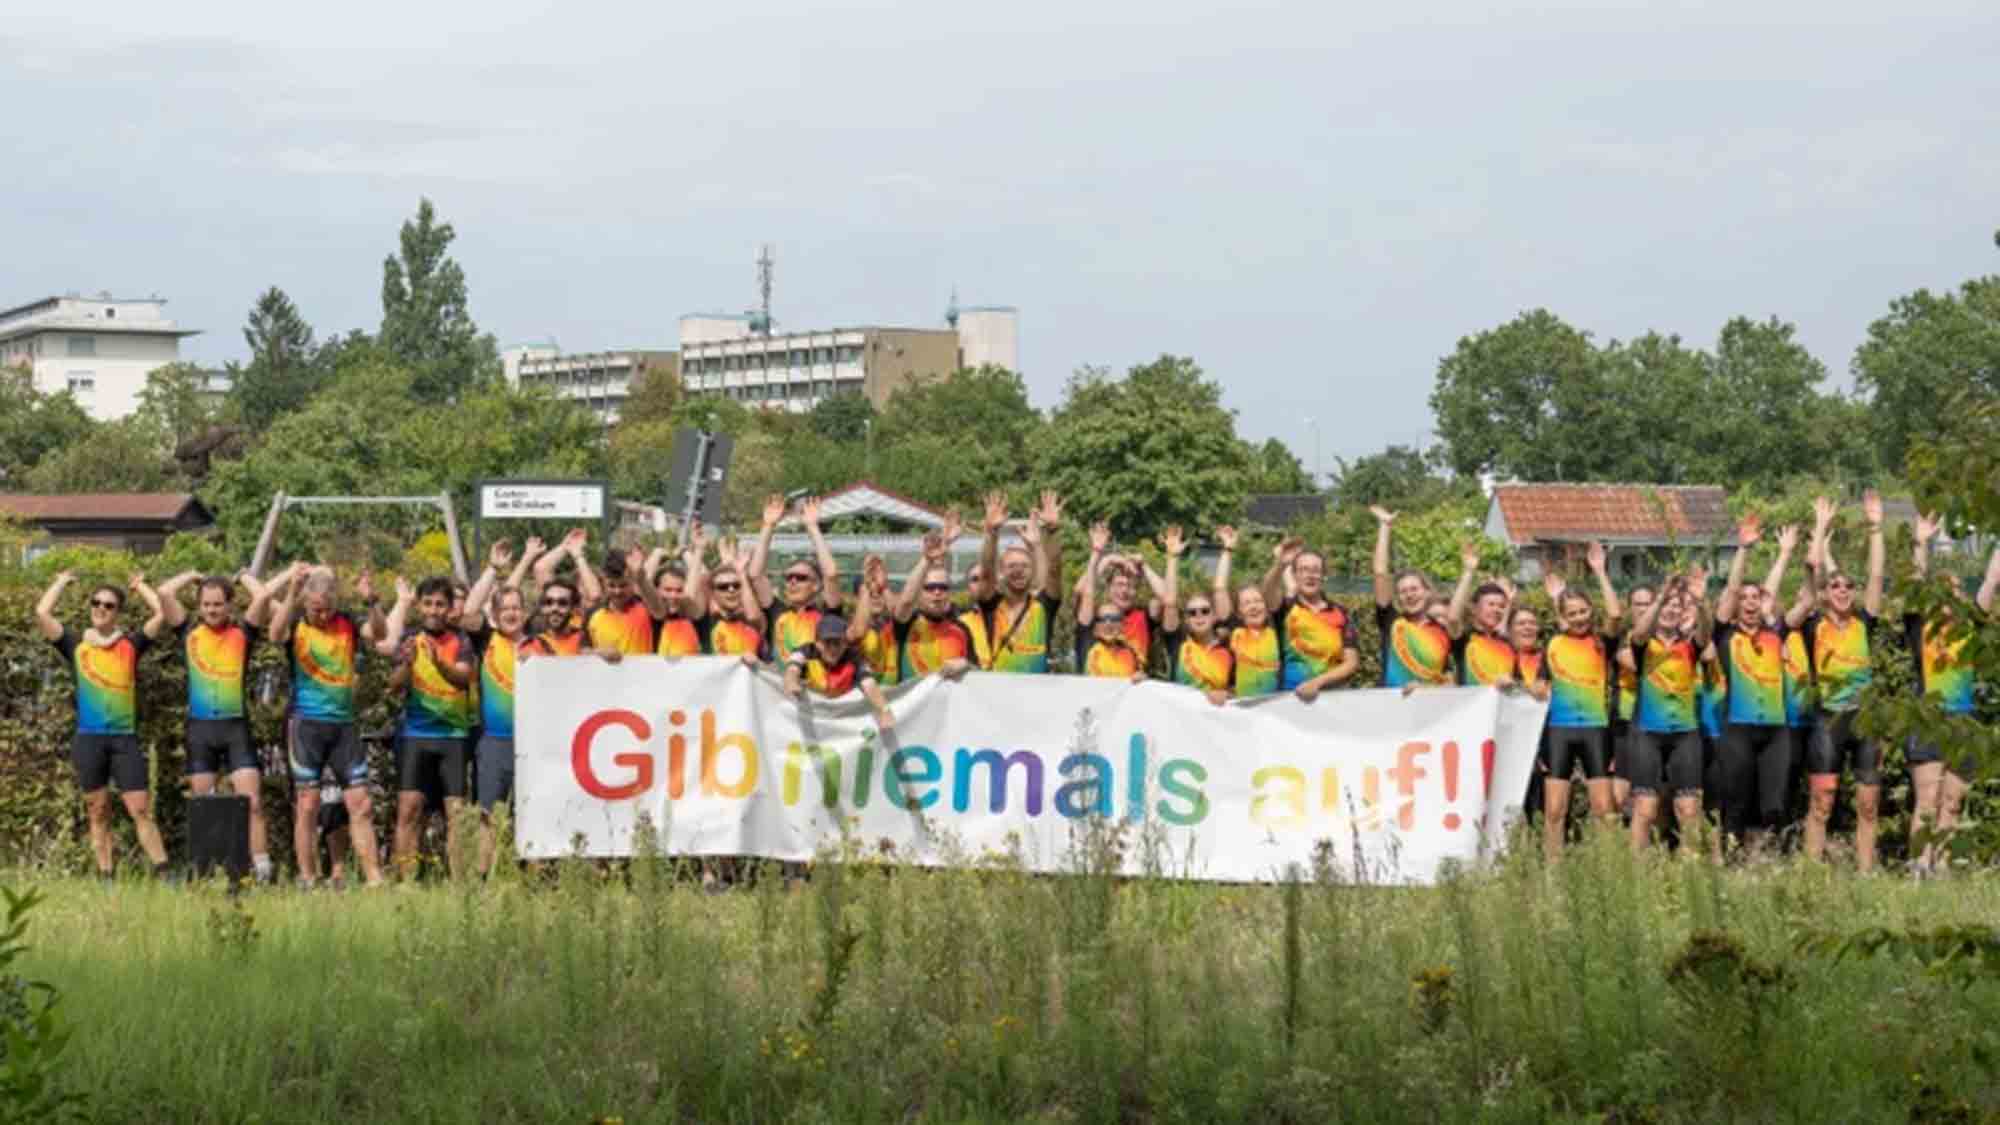 Städtisches Klinikum Karlsruhe, Regenbogenfahrt soll krebskranken Kindern Mut machen